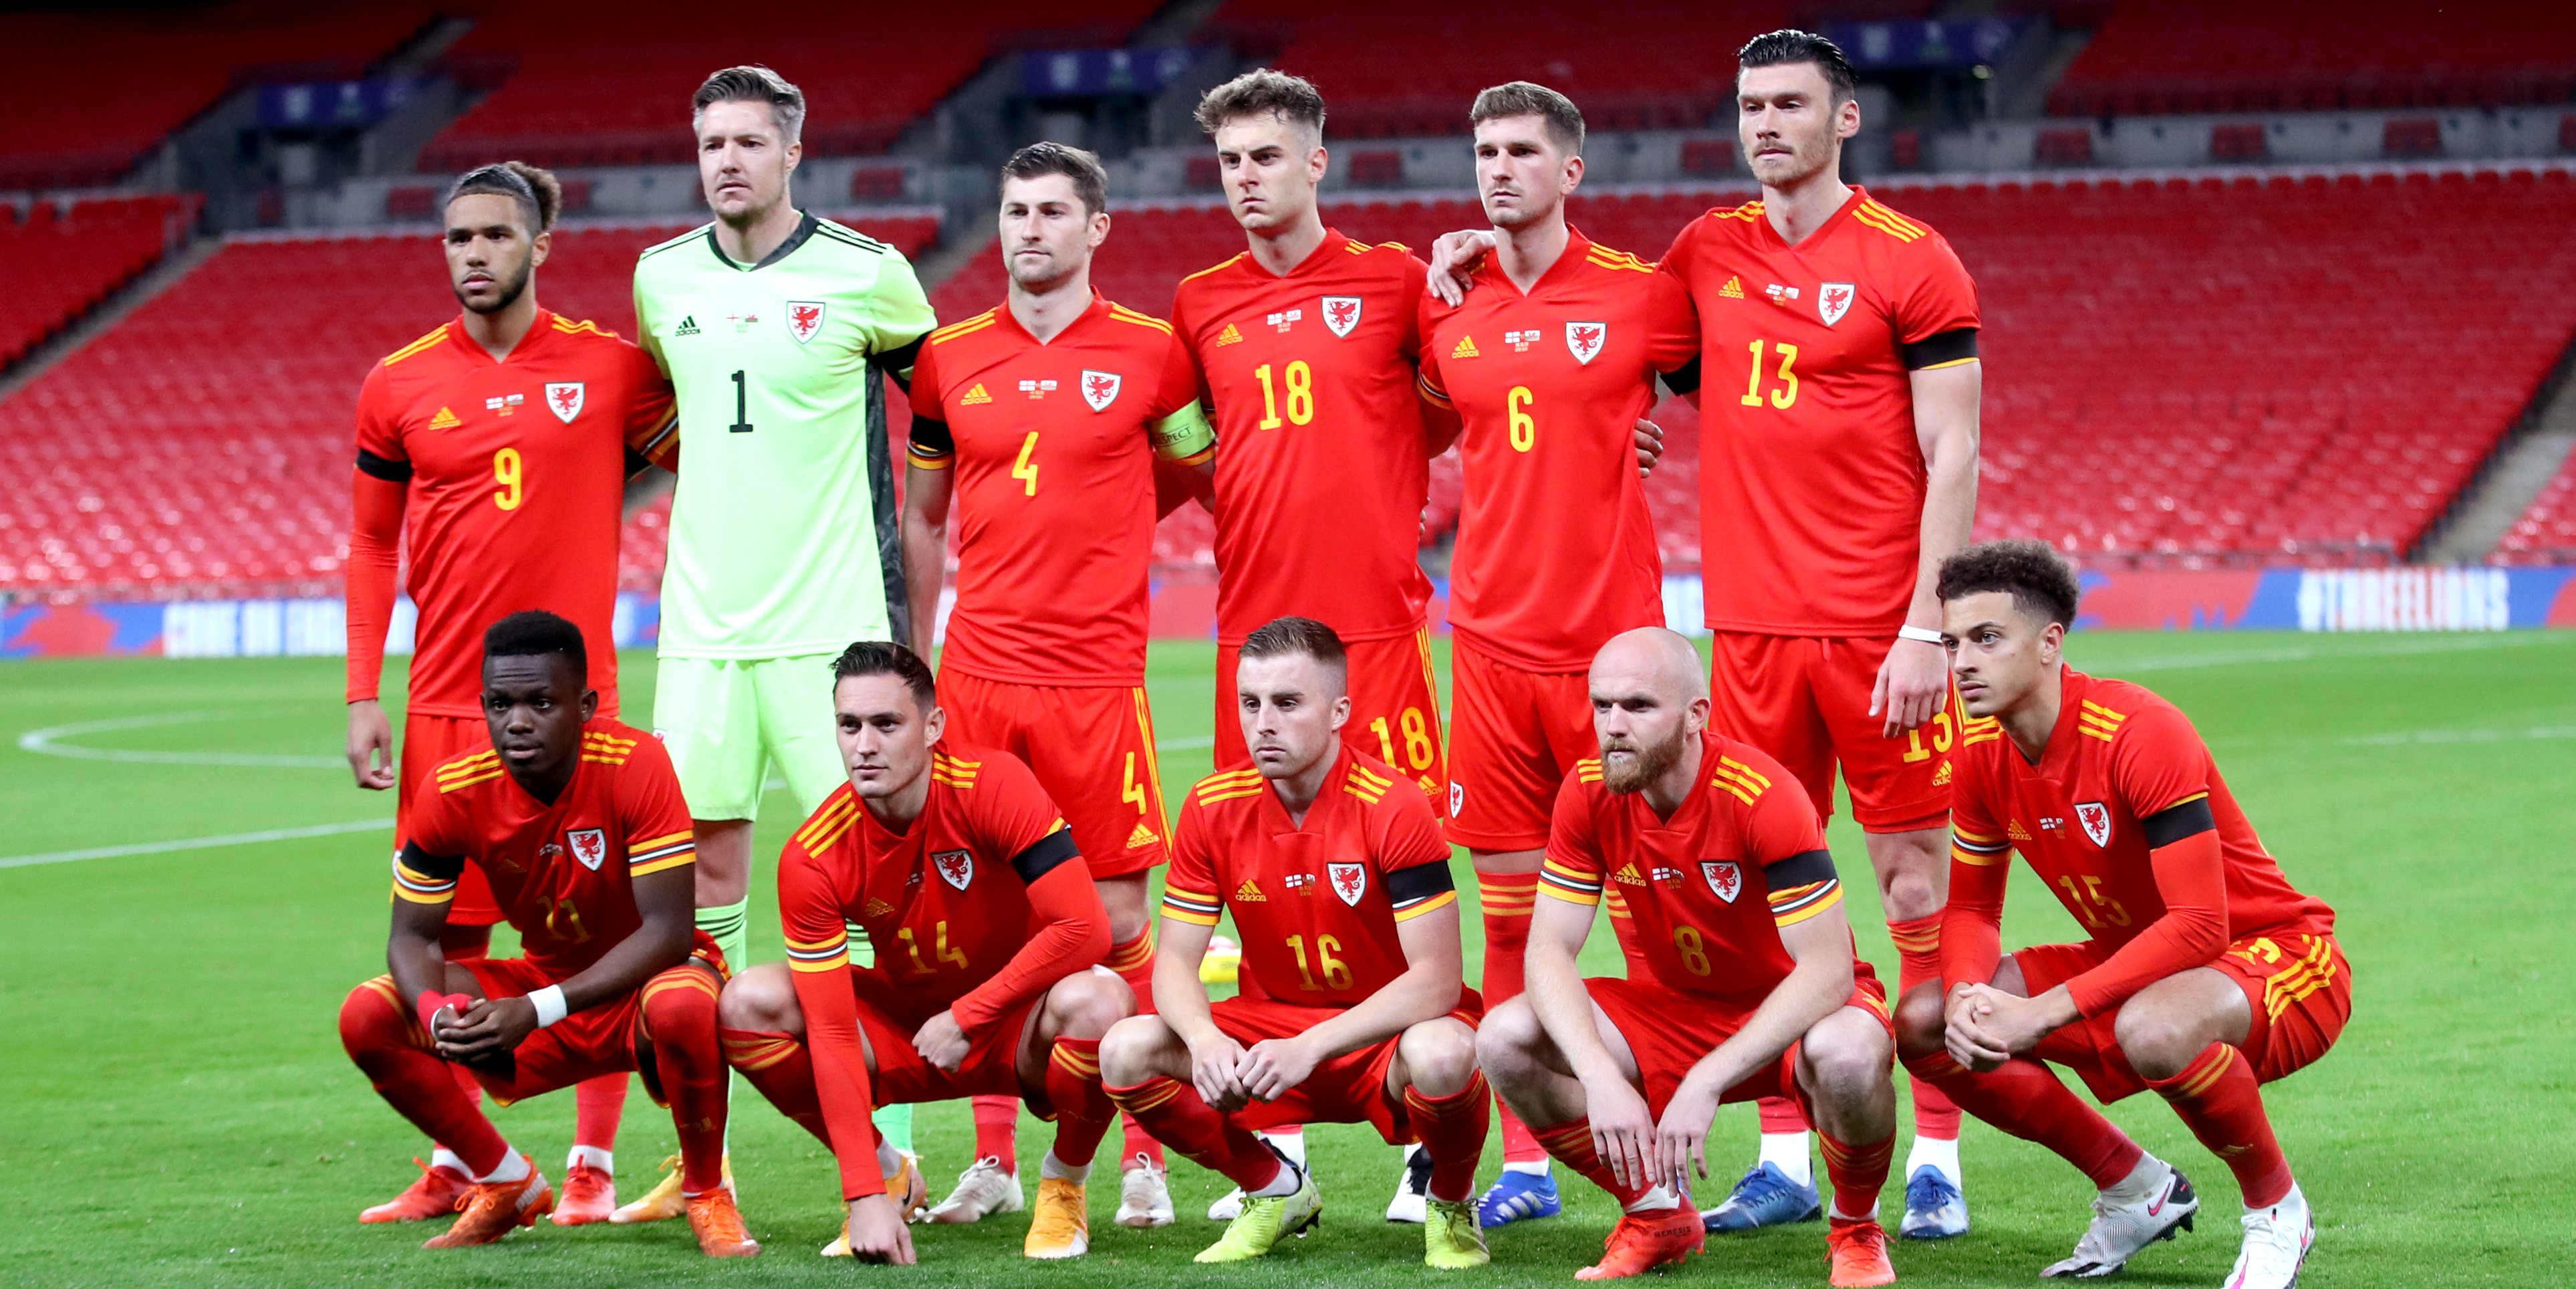 País de Gales terminou grupo E de qualificação, com Croácia, Eslováquia, Hungria e Azerbaijão, no segundo lugar com 14 pontos em oito jogos